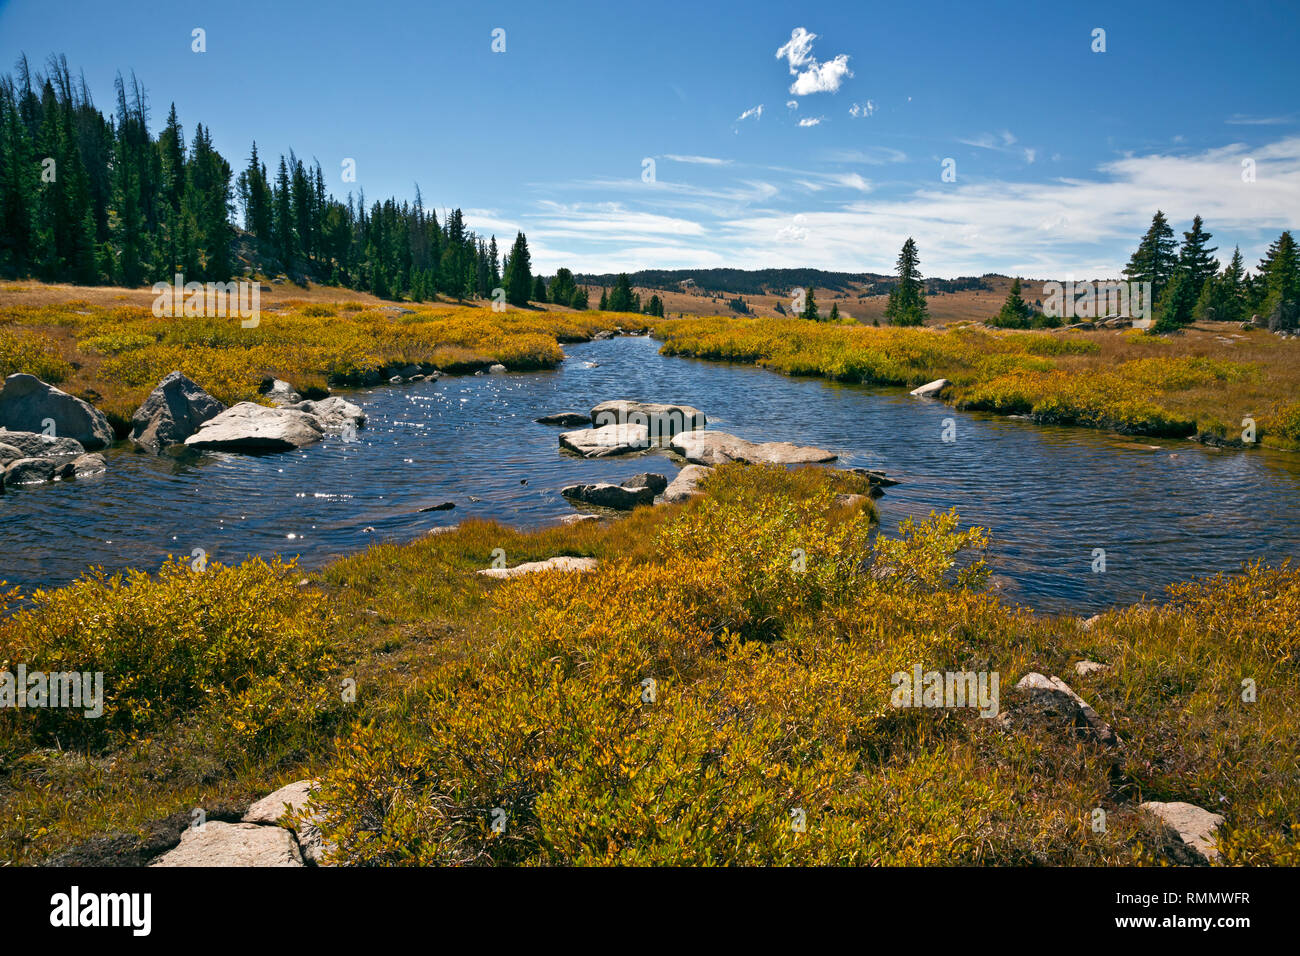 WY03737-00...WYOMING - la couleur de l'automne le long d'un ruisseau dans la région des lacs de la chaîne près de l'autoroute Beartooth dans la forêt nationale de Shoshone. Banque D'Images